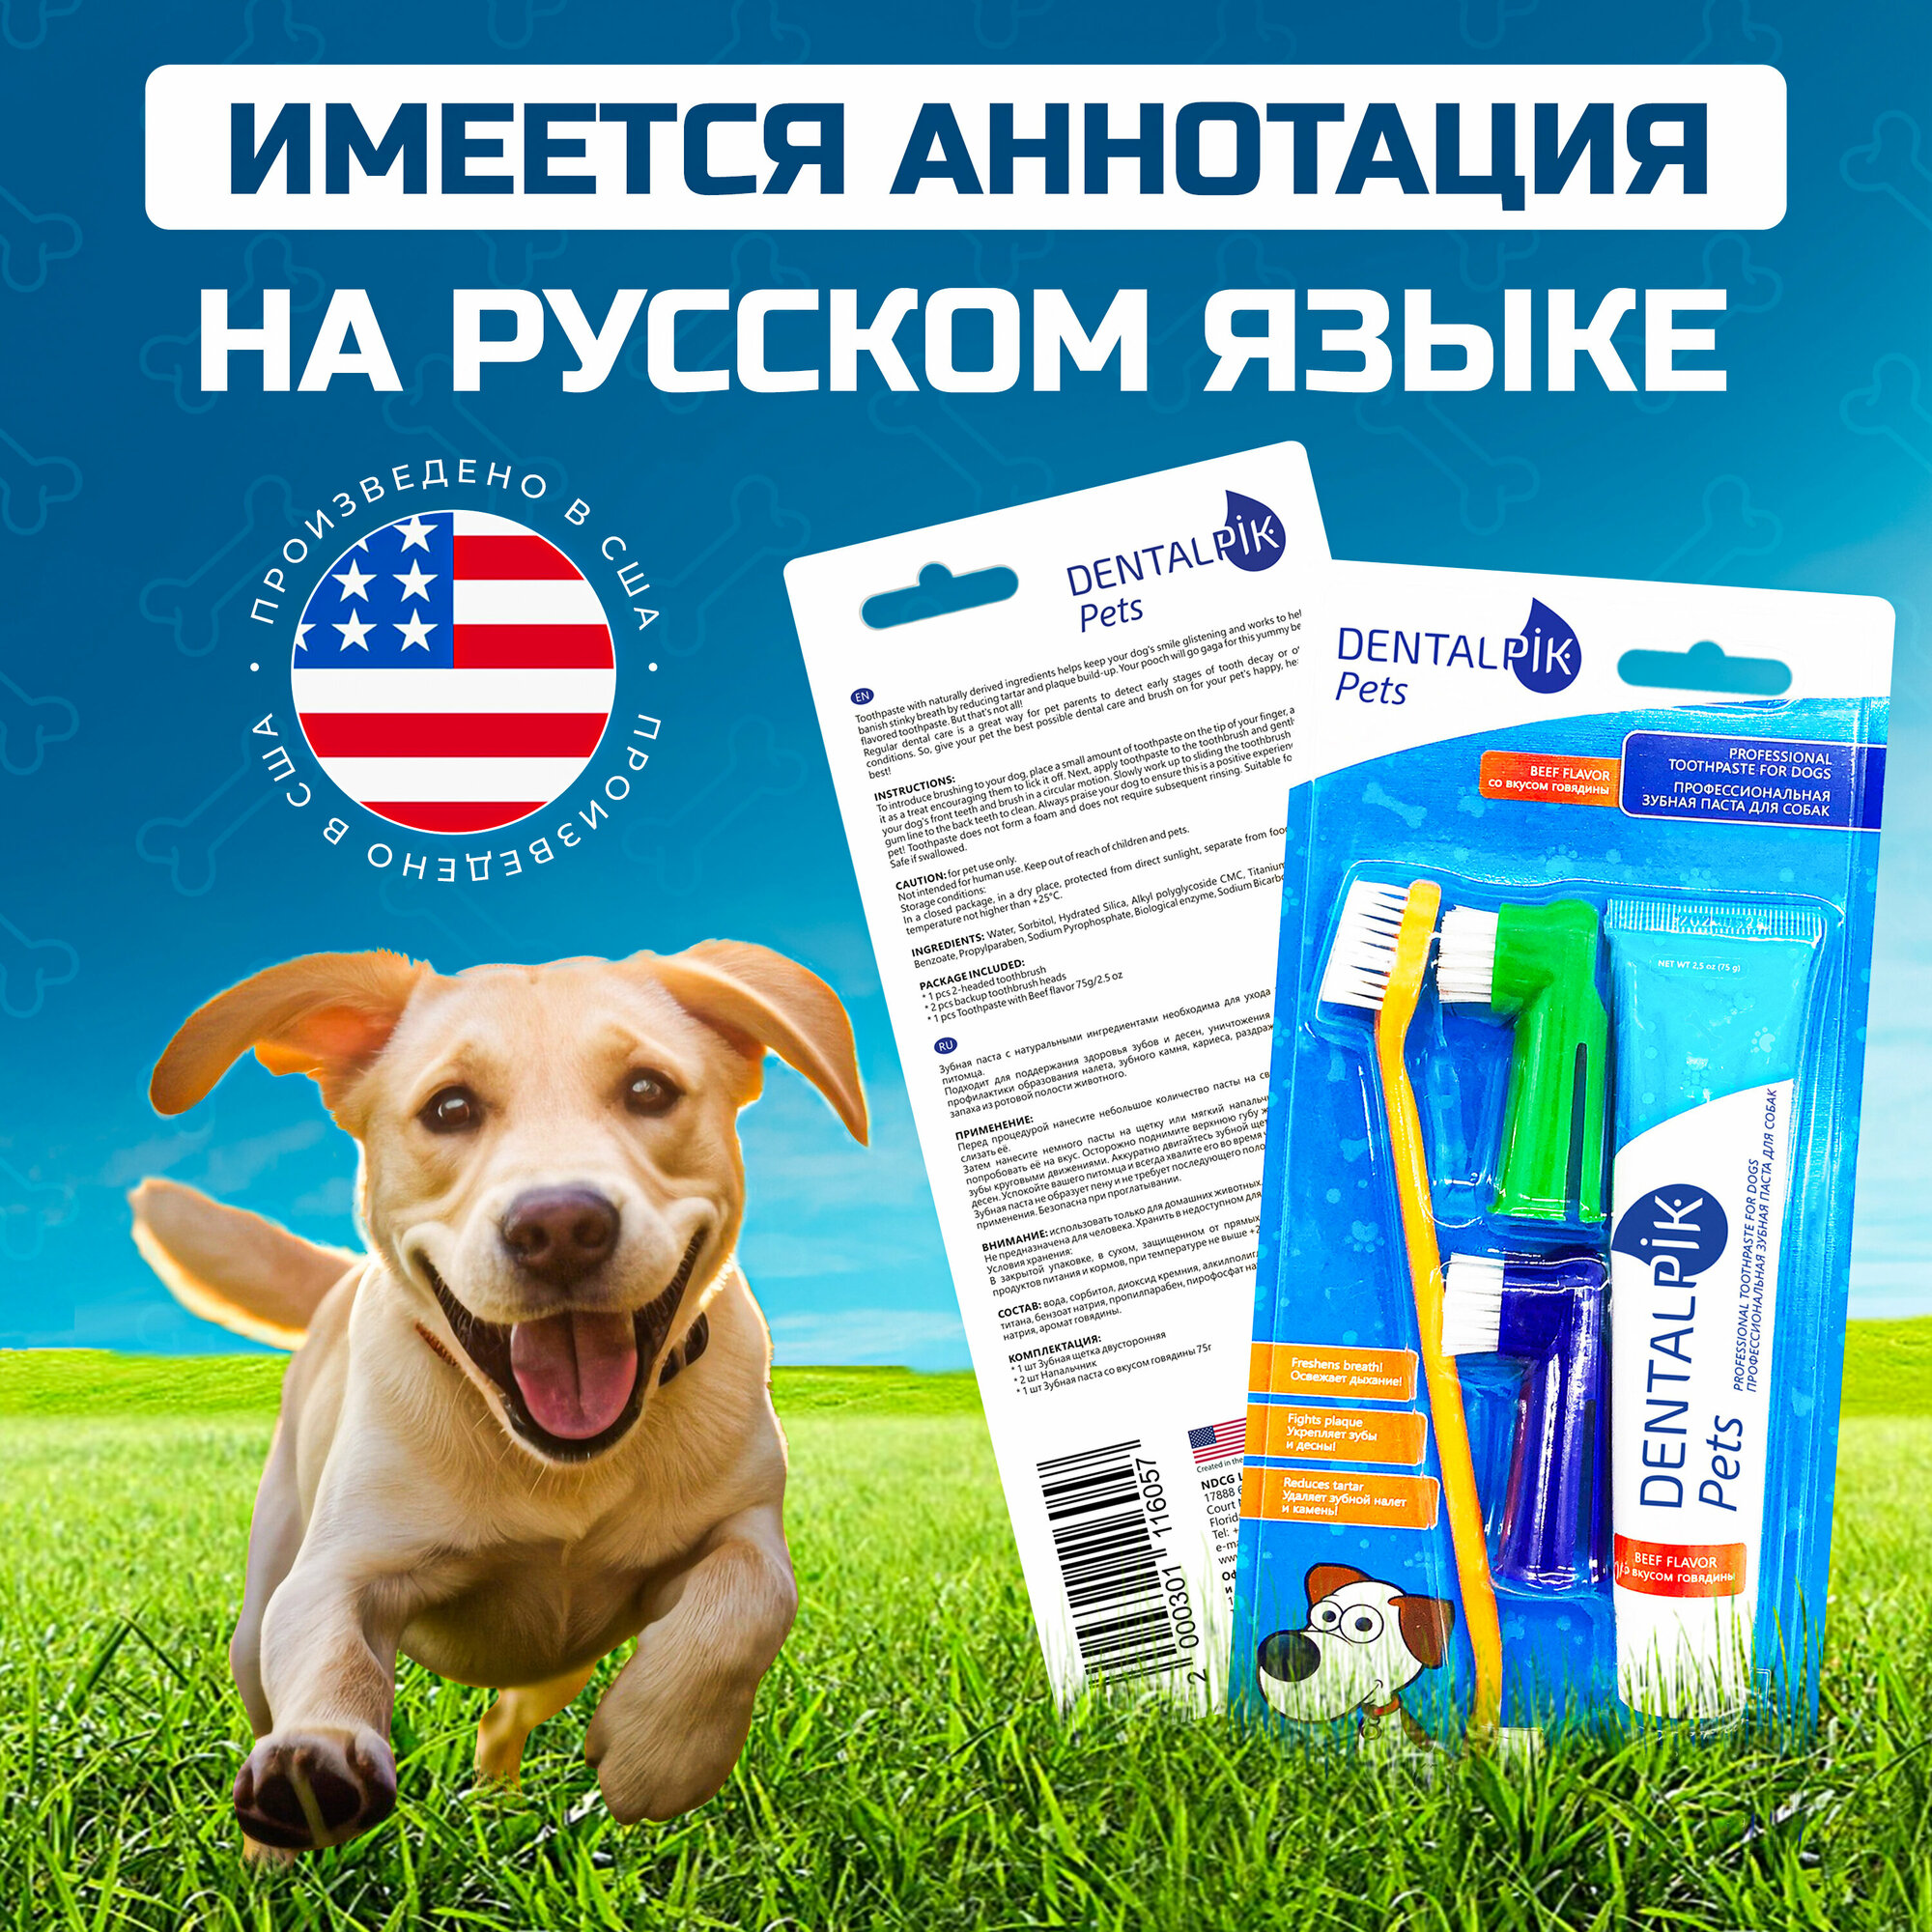 Зубная паста для собак Dentalpik Pets, вкус говядина, 75 гр + 3 щетки